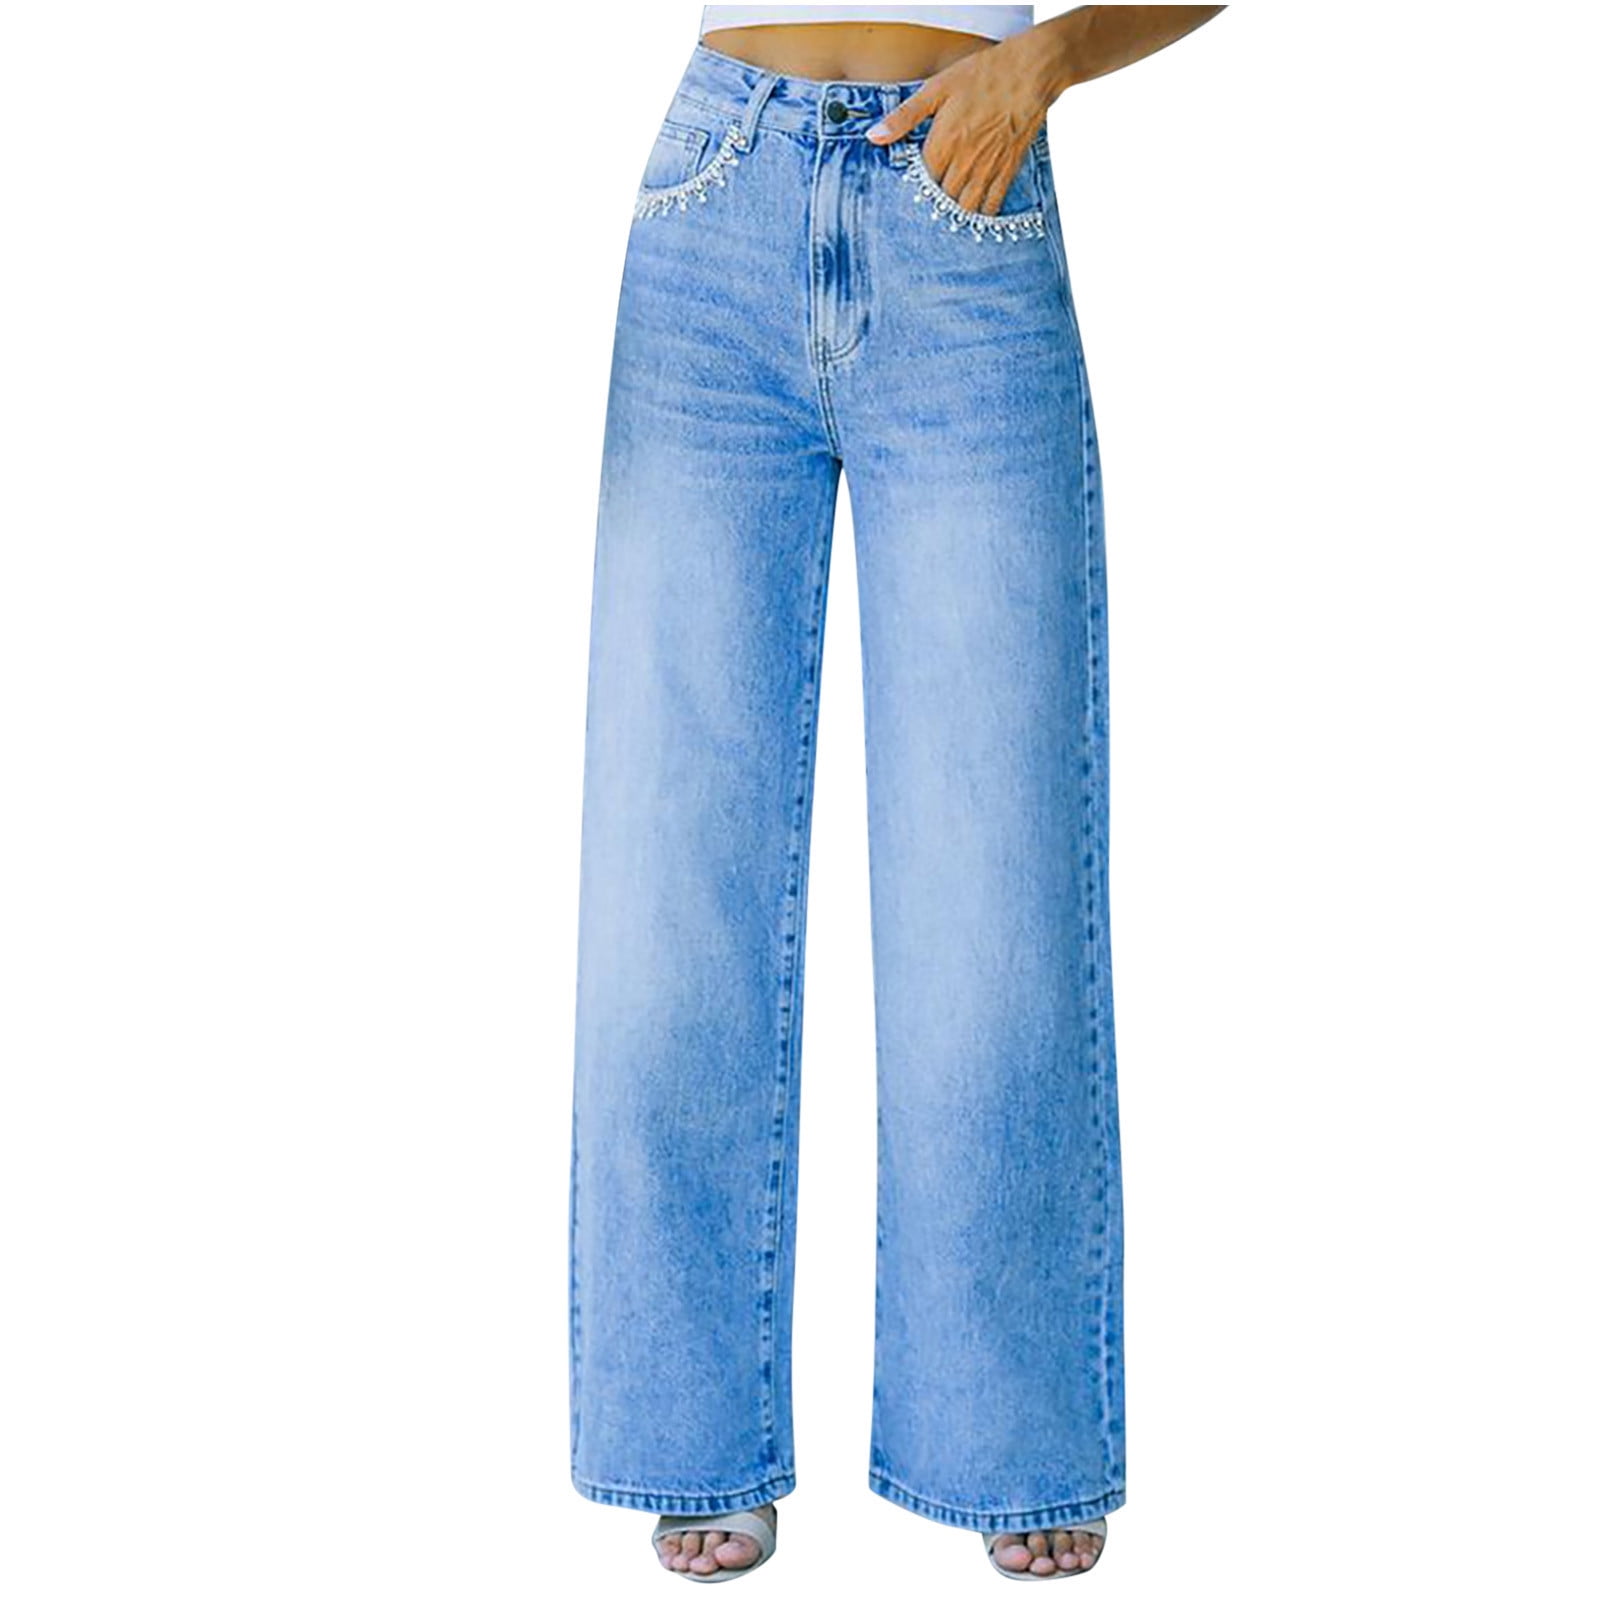 Baggy Jeans,Heart print wide leg denim Jeans- Light blue-sgquangbinhtourist.com.vn